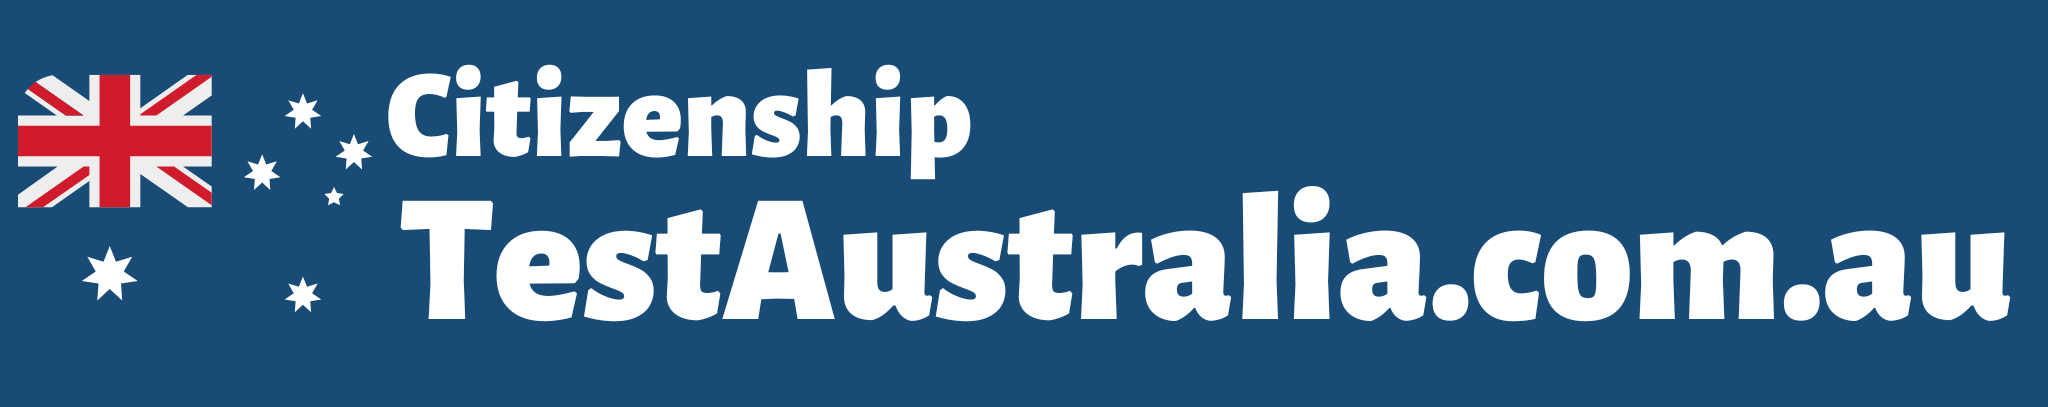 Easily Pass the 2020 Australian Citizenship Test